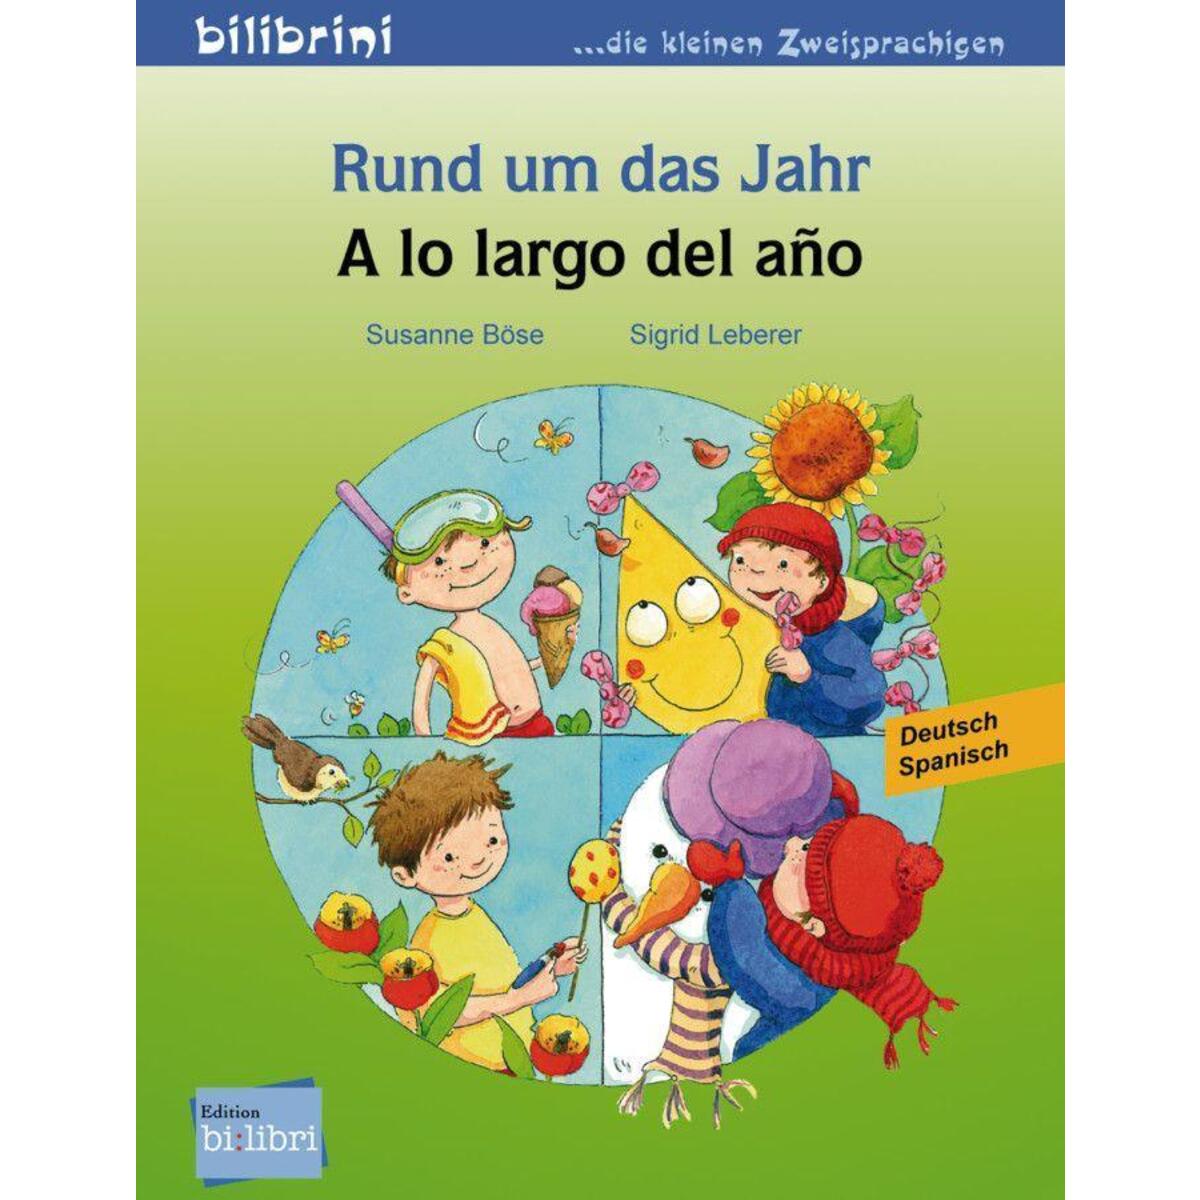 Rund um das Jahr. Kinderbuch - A lo largo ddel ano von Hueber Verlag GmbH